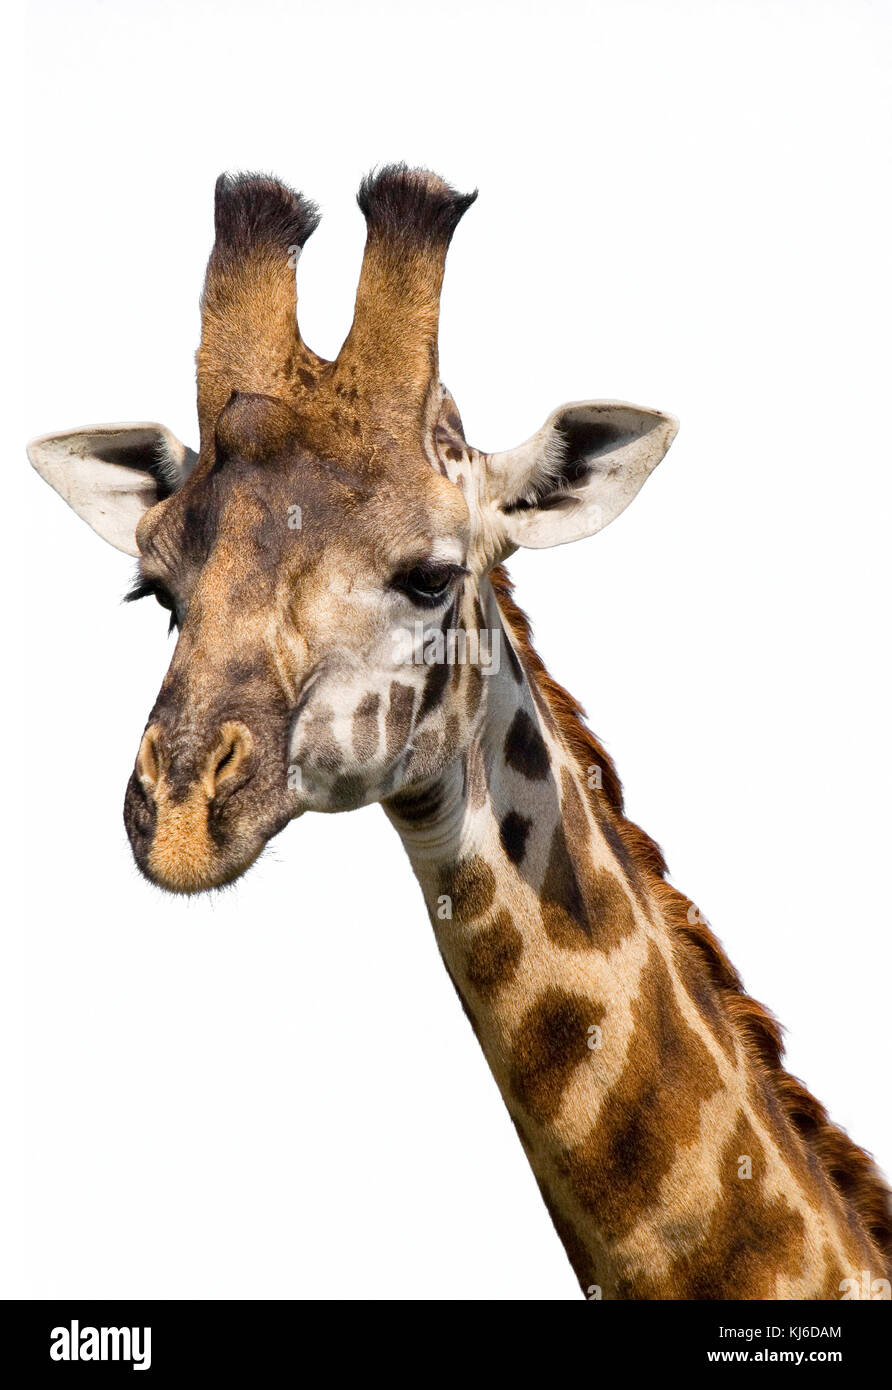 Masai giraffe (Giraffa camelopardalis tippelskirchi) ritratto, isolati su sfondo bianco. Foto Stock